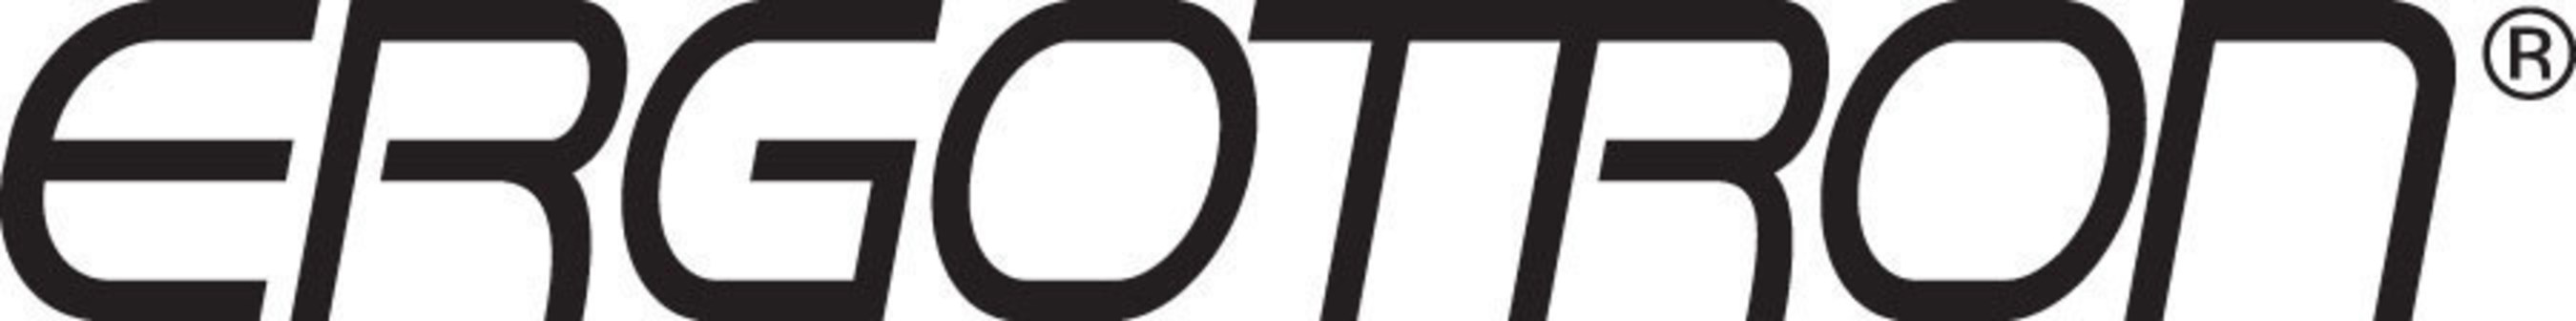 Ergotron, Inc. logo